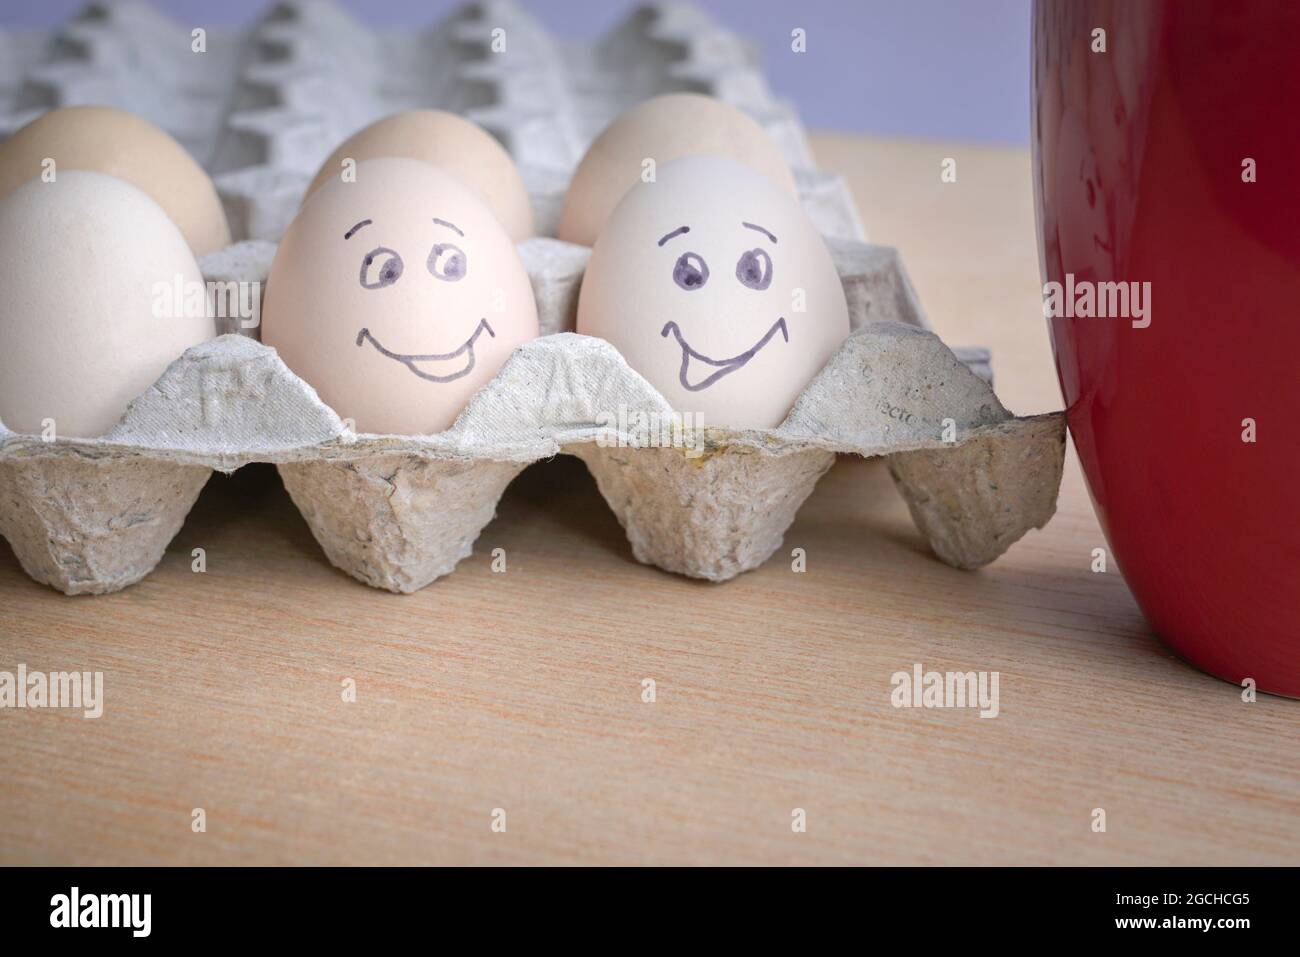 Due uova dipinte con una faccia sorridente accanto a una tazza di caffè rossa. La colazione era buona. Foto Stock